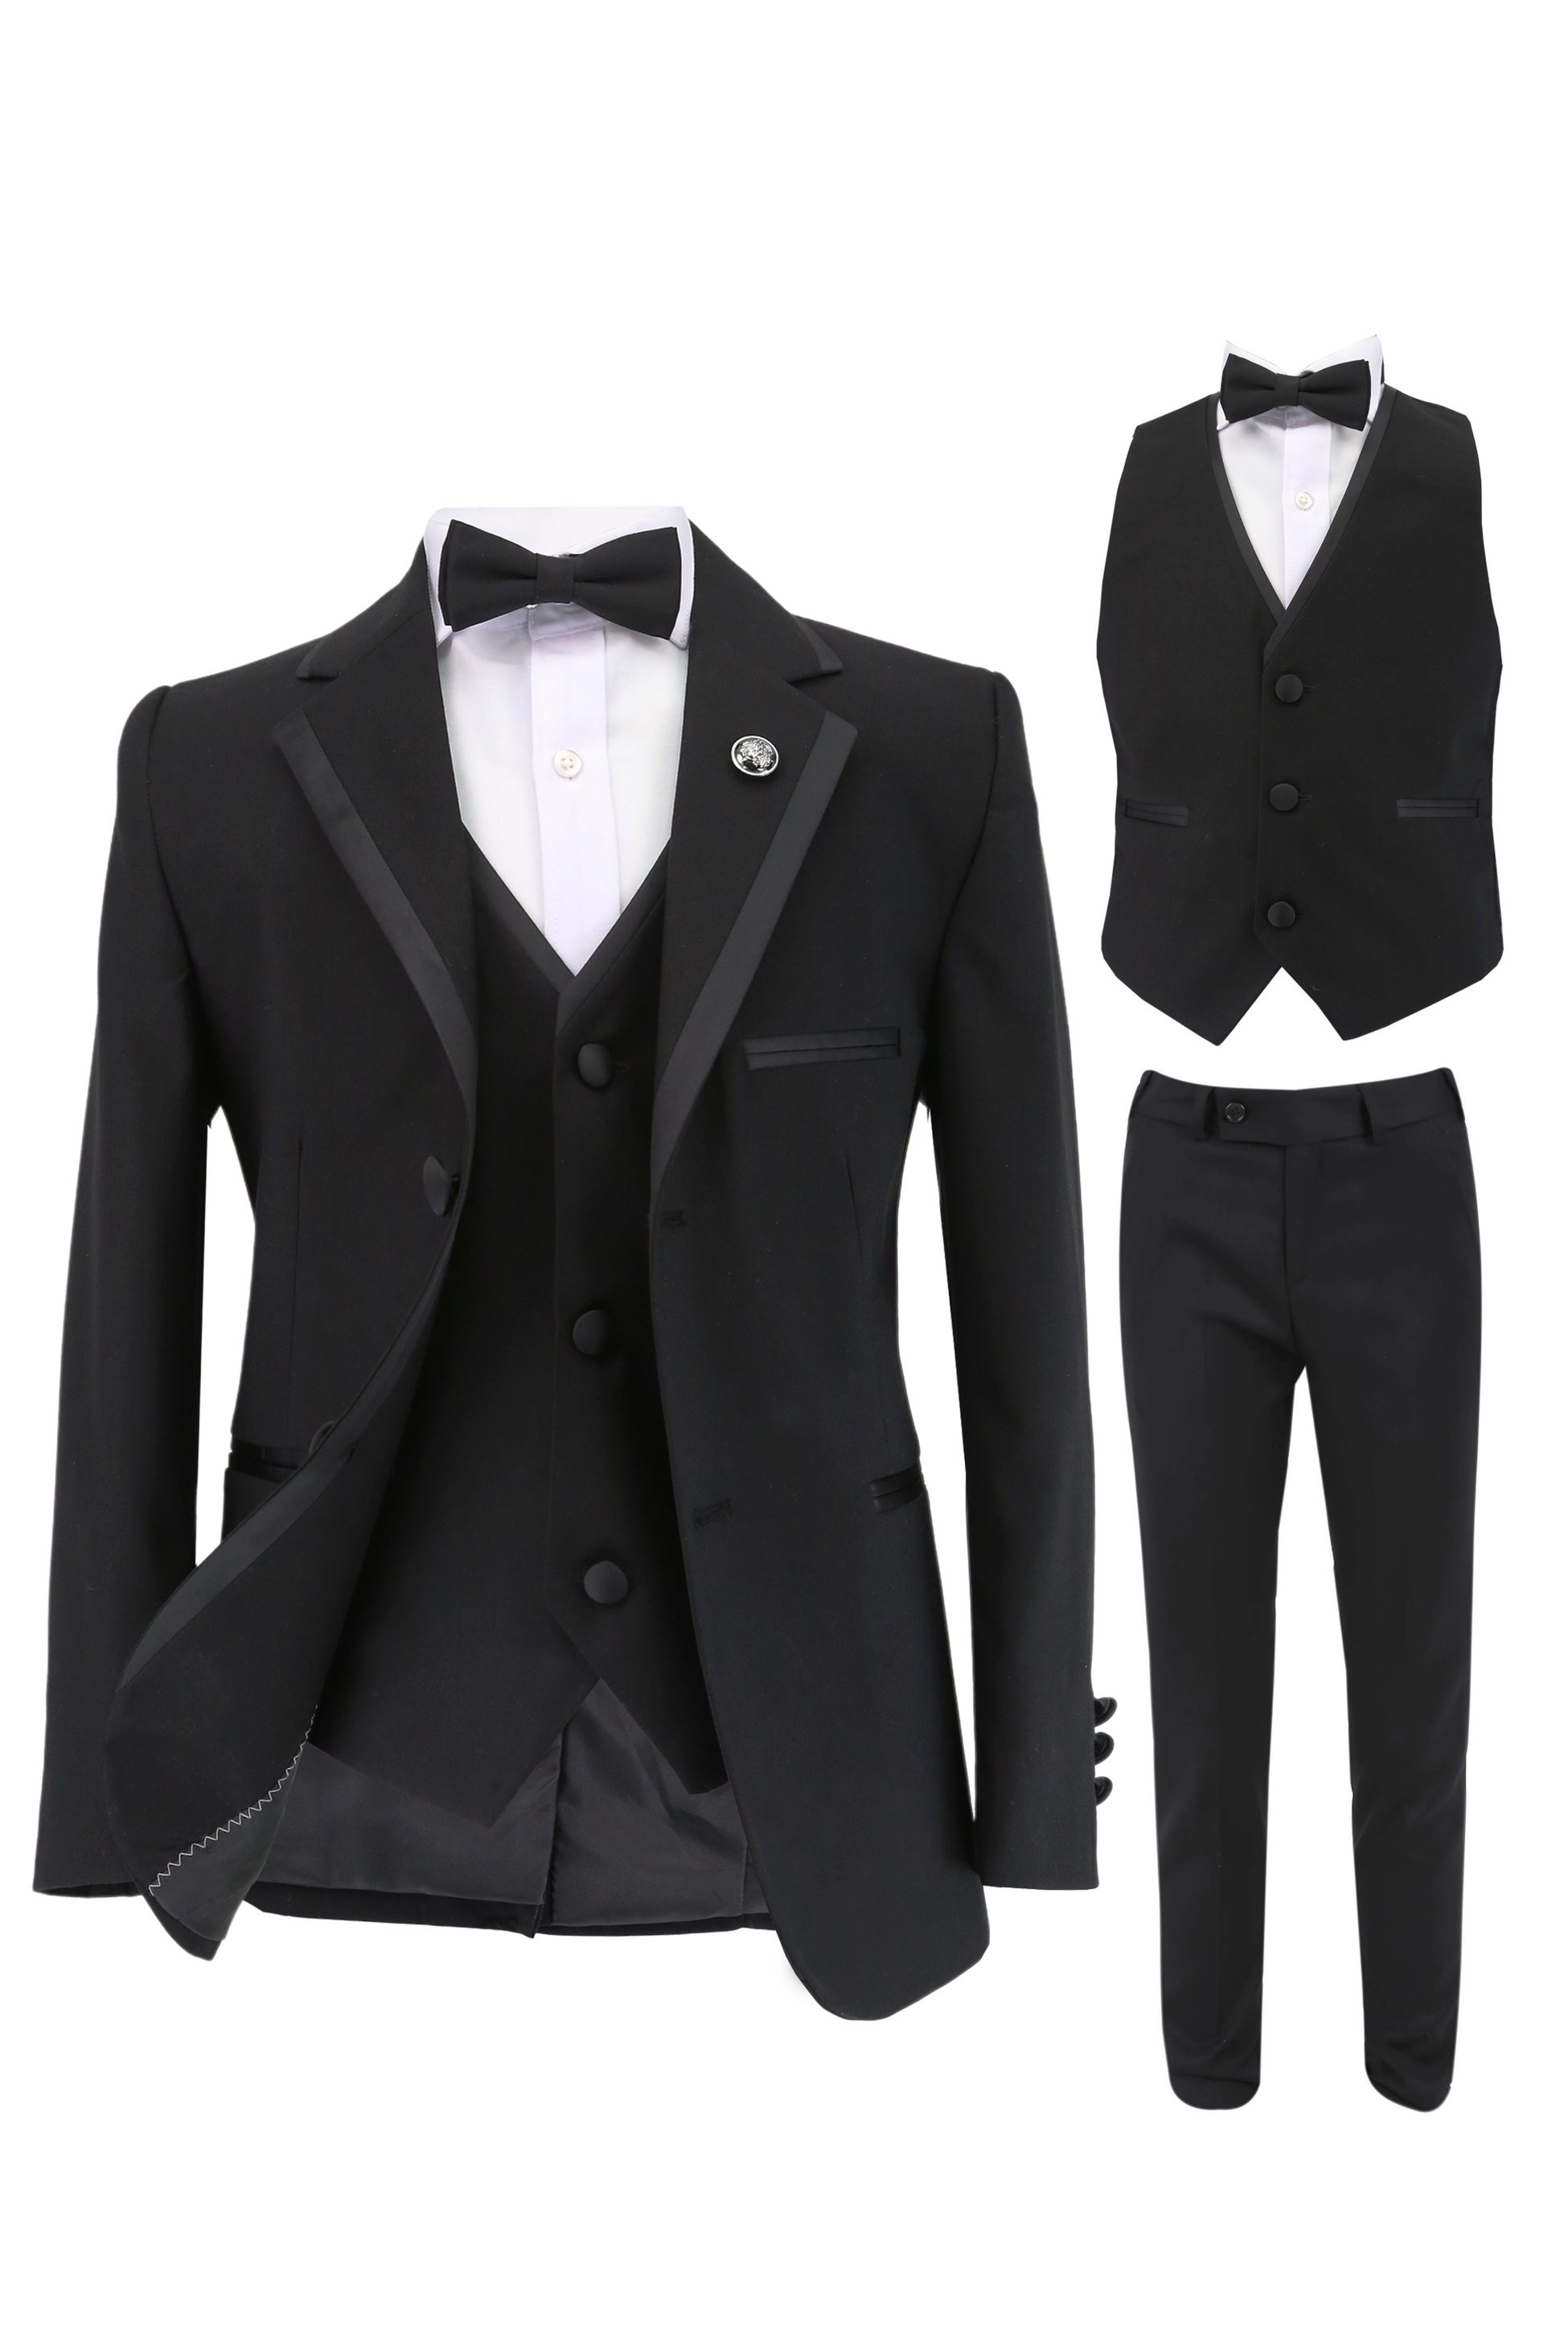 Jungen Smoking Paspel Dinner Anzug, Slim Fit 5-Teiliges Set für Hochzeiten und Besondere Anlässe - Schwarz